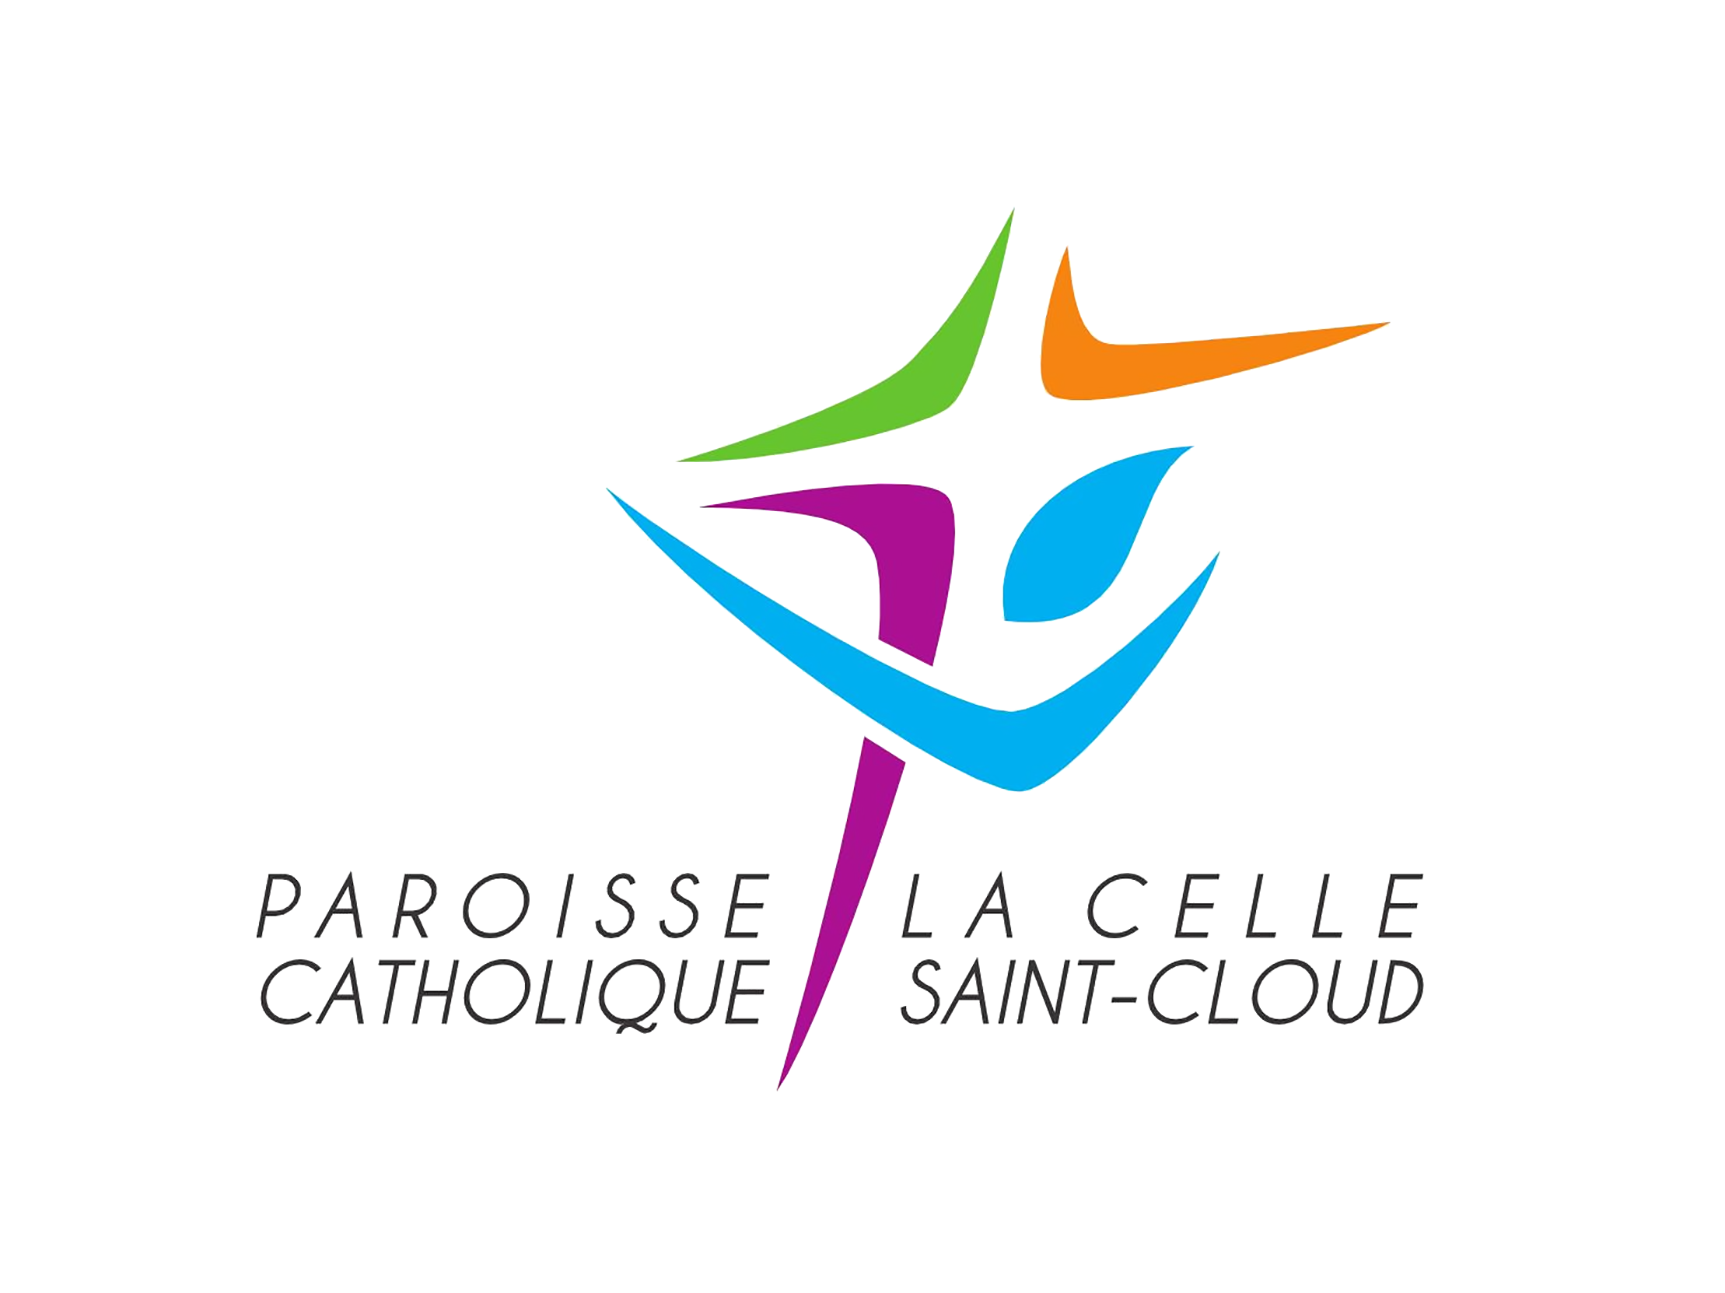 Paroisse catholique La Celle Saint Cloud